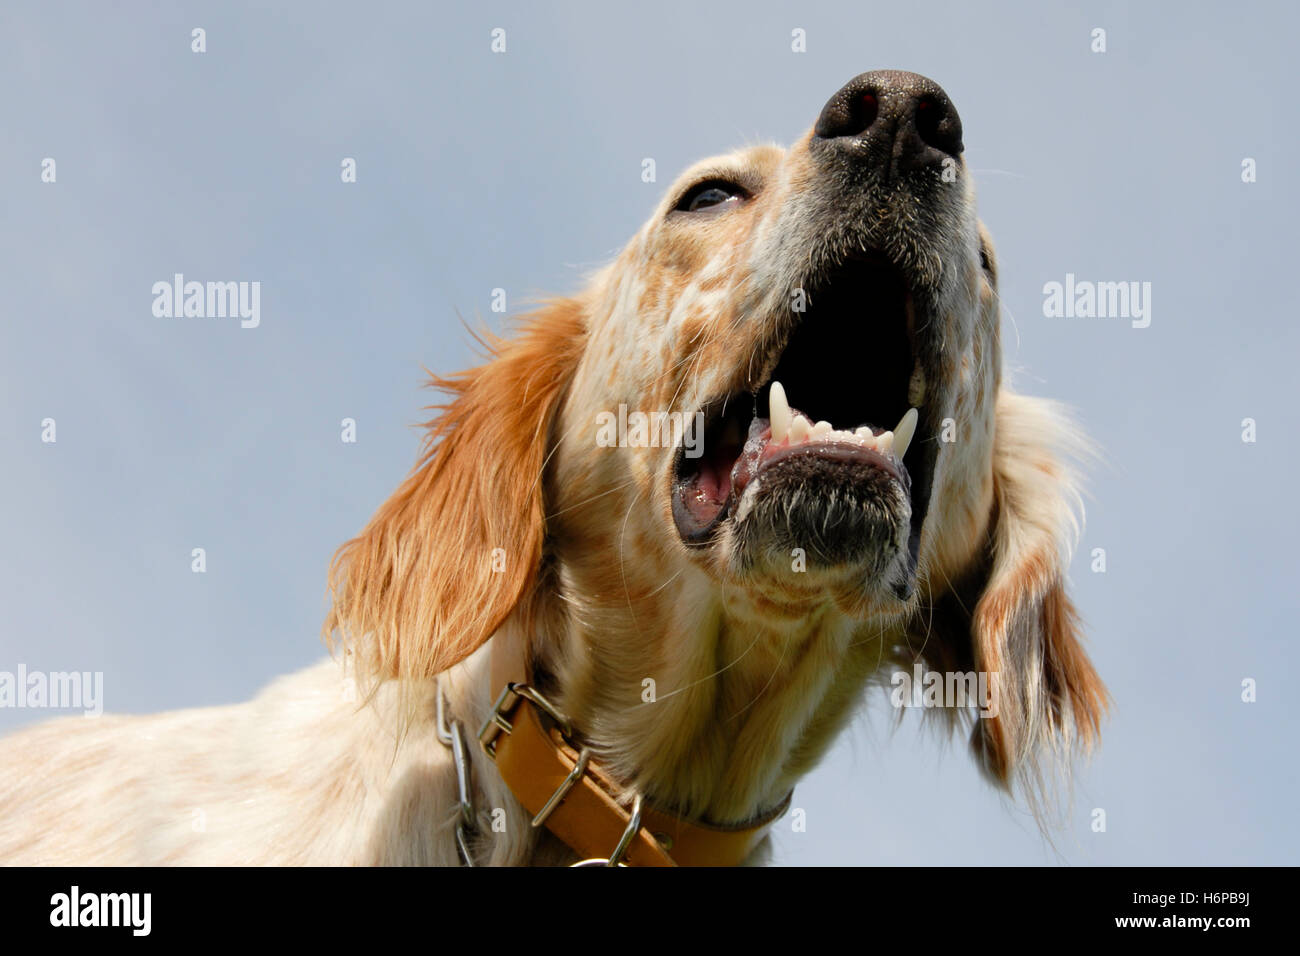 Hund aggressiv aggressive Englisch Setter bellenden pet Tierzähnen bewachen Hund ein raving wütend wütend irately Eckzahn setter Stockfoto